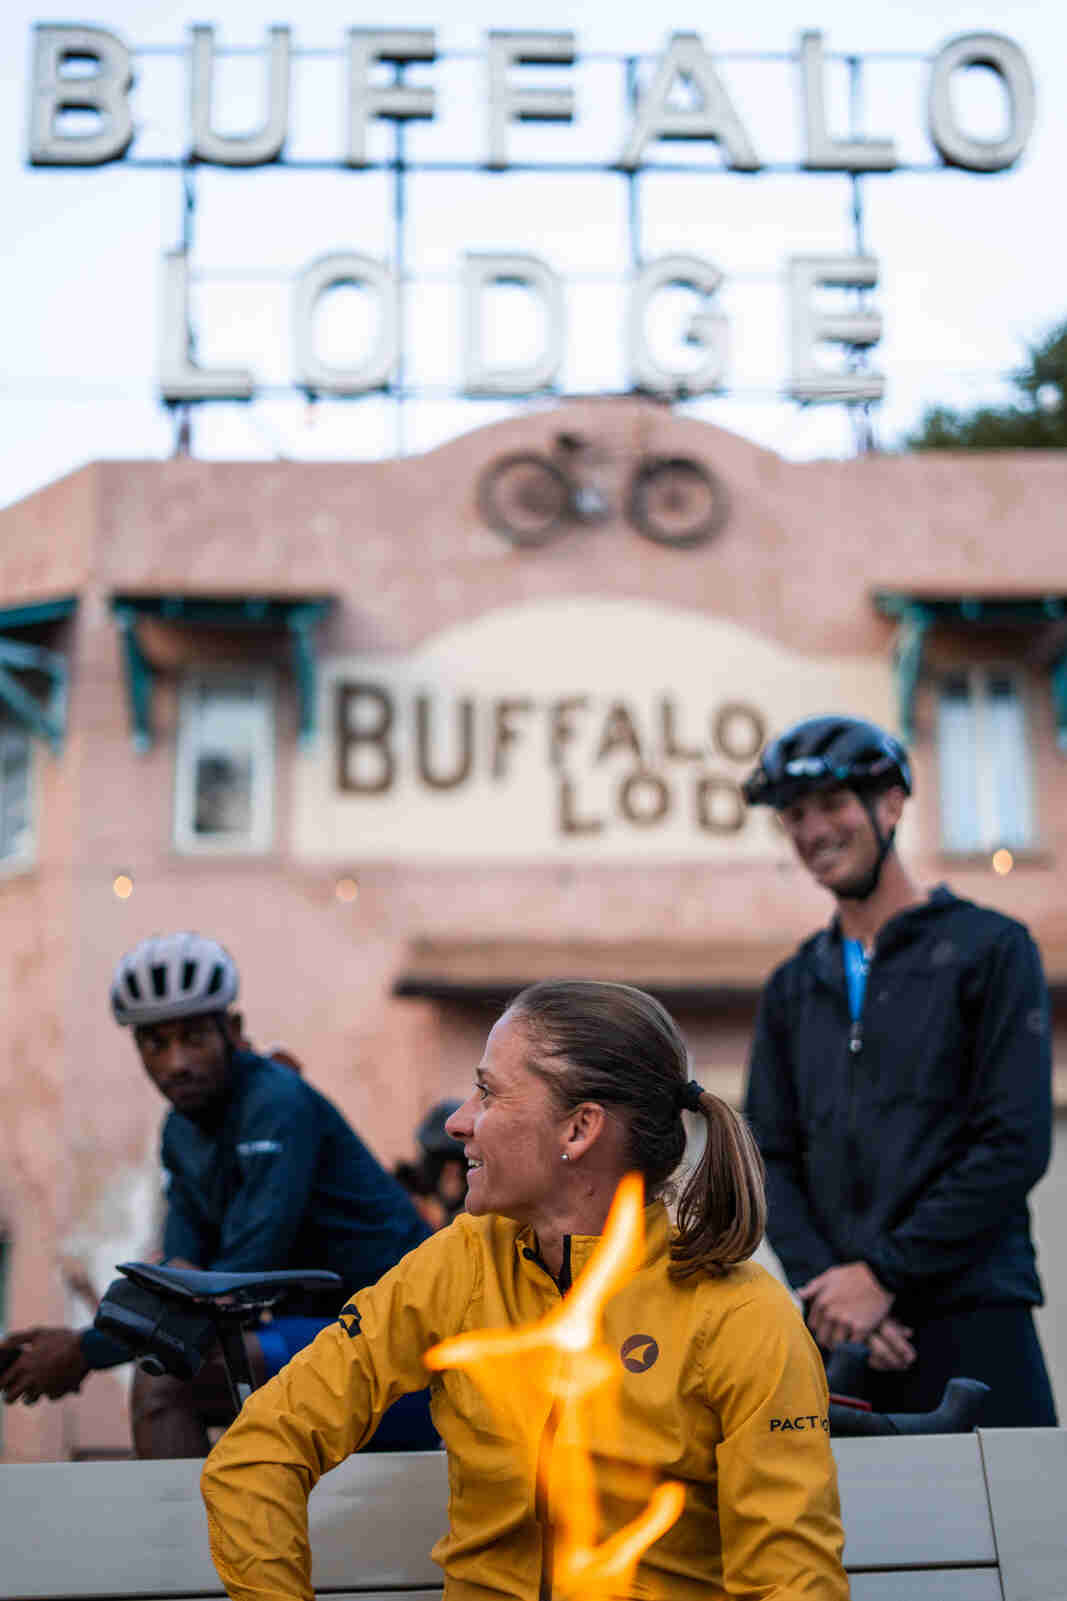 Cyclists at Buffalo Bike Lodge Fire Pit